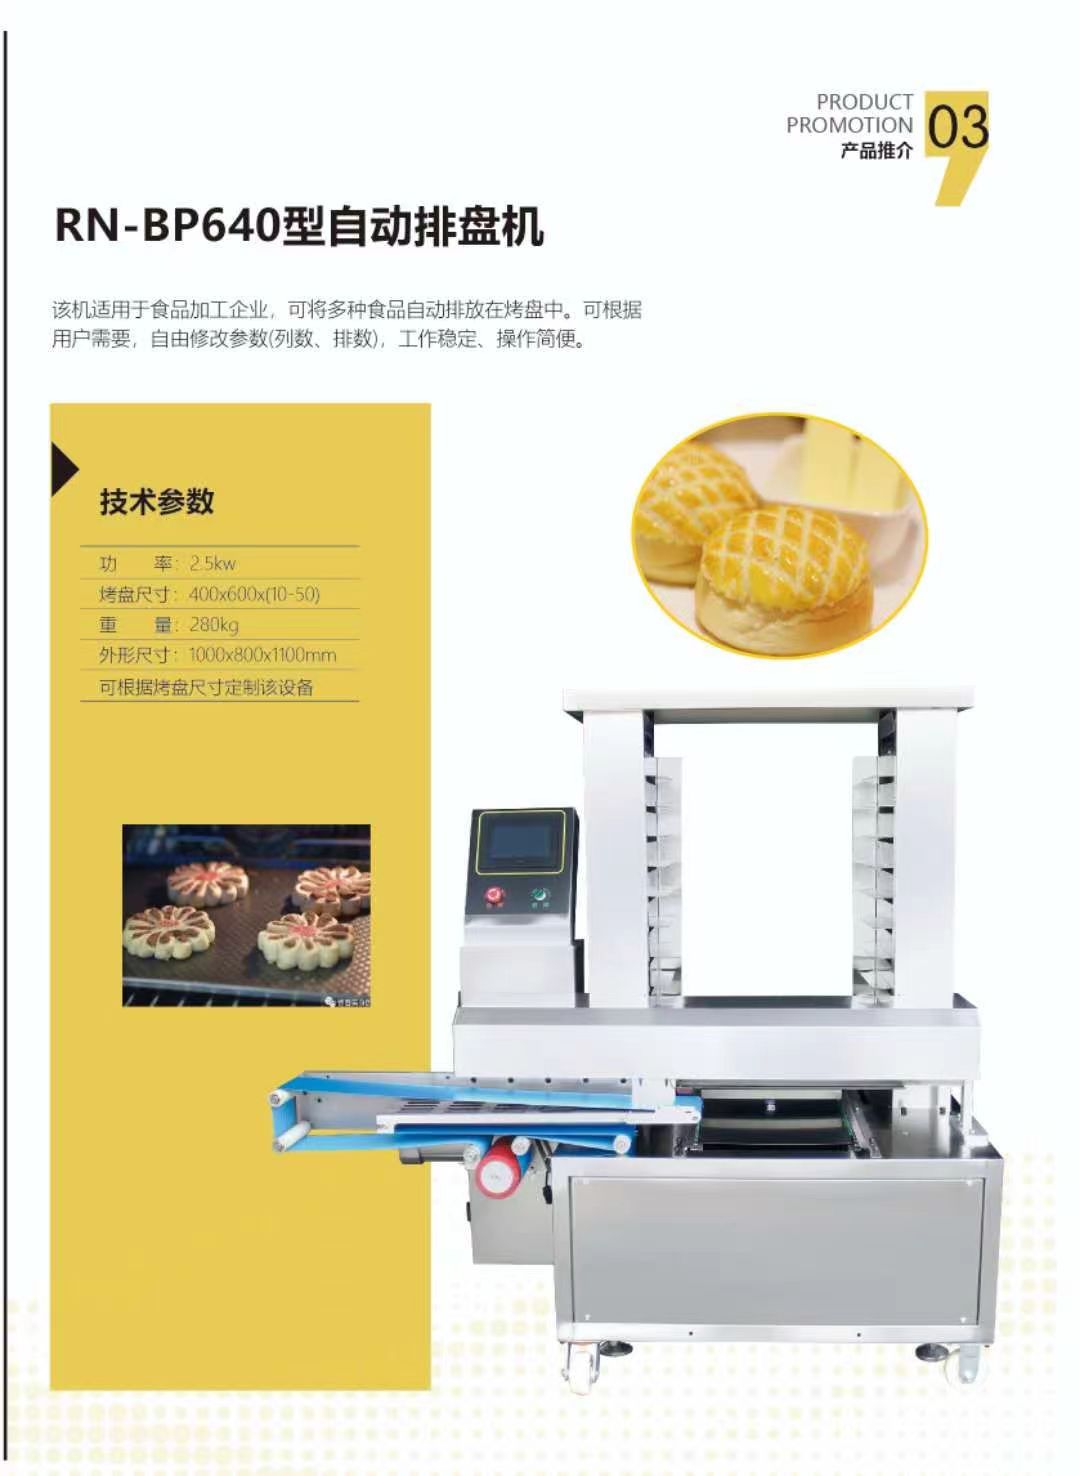 RN-BP640型自动排盘机